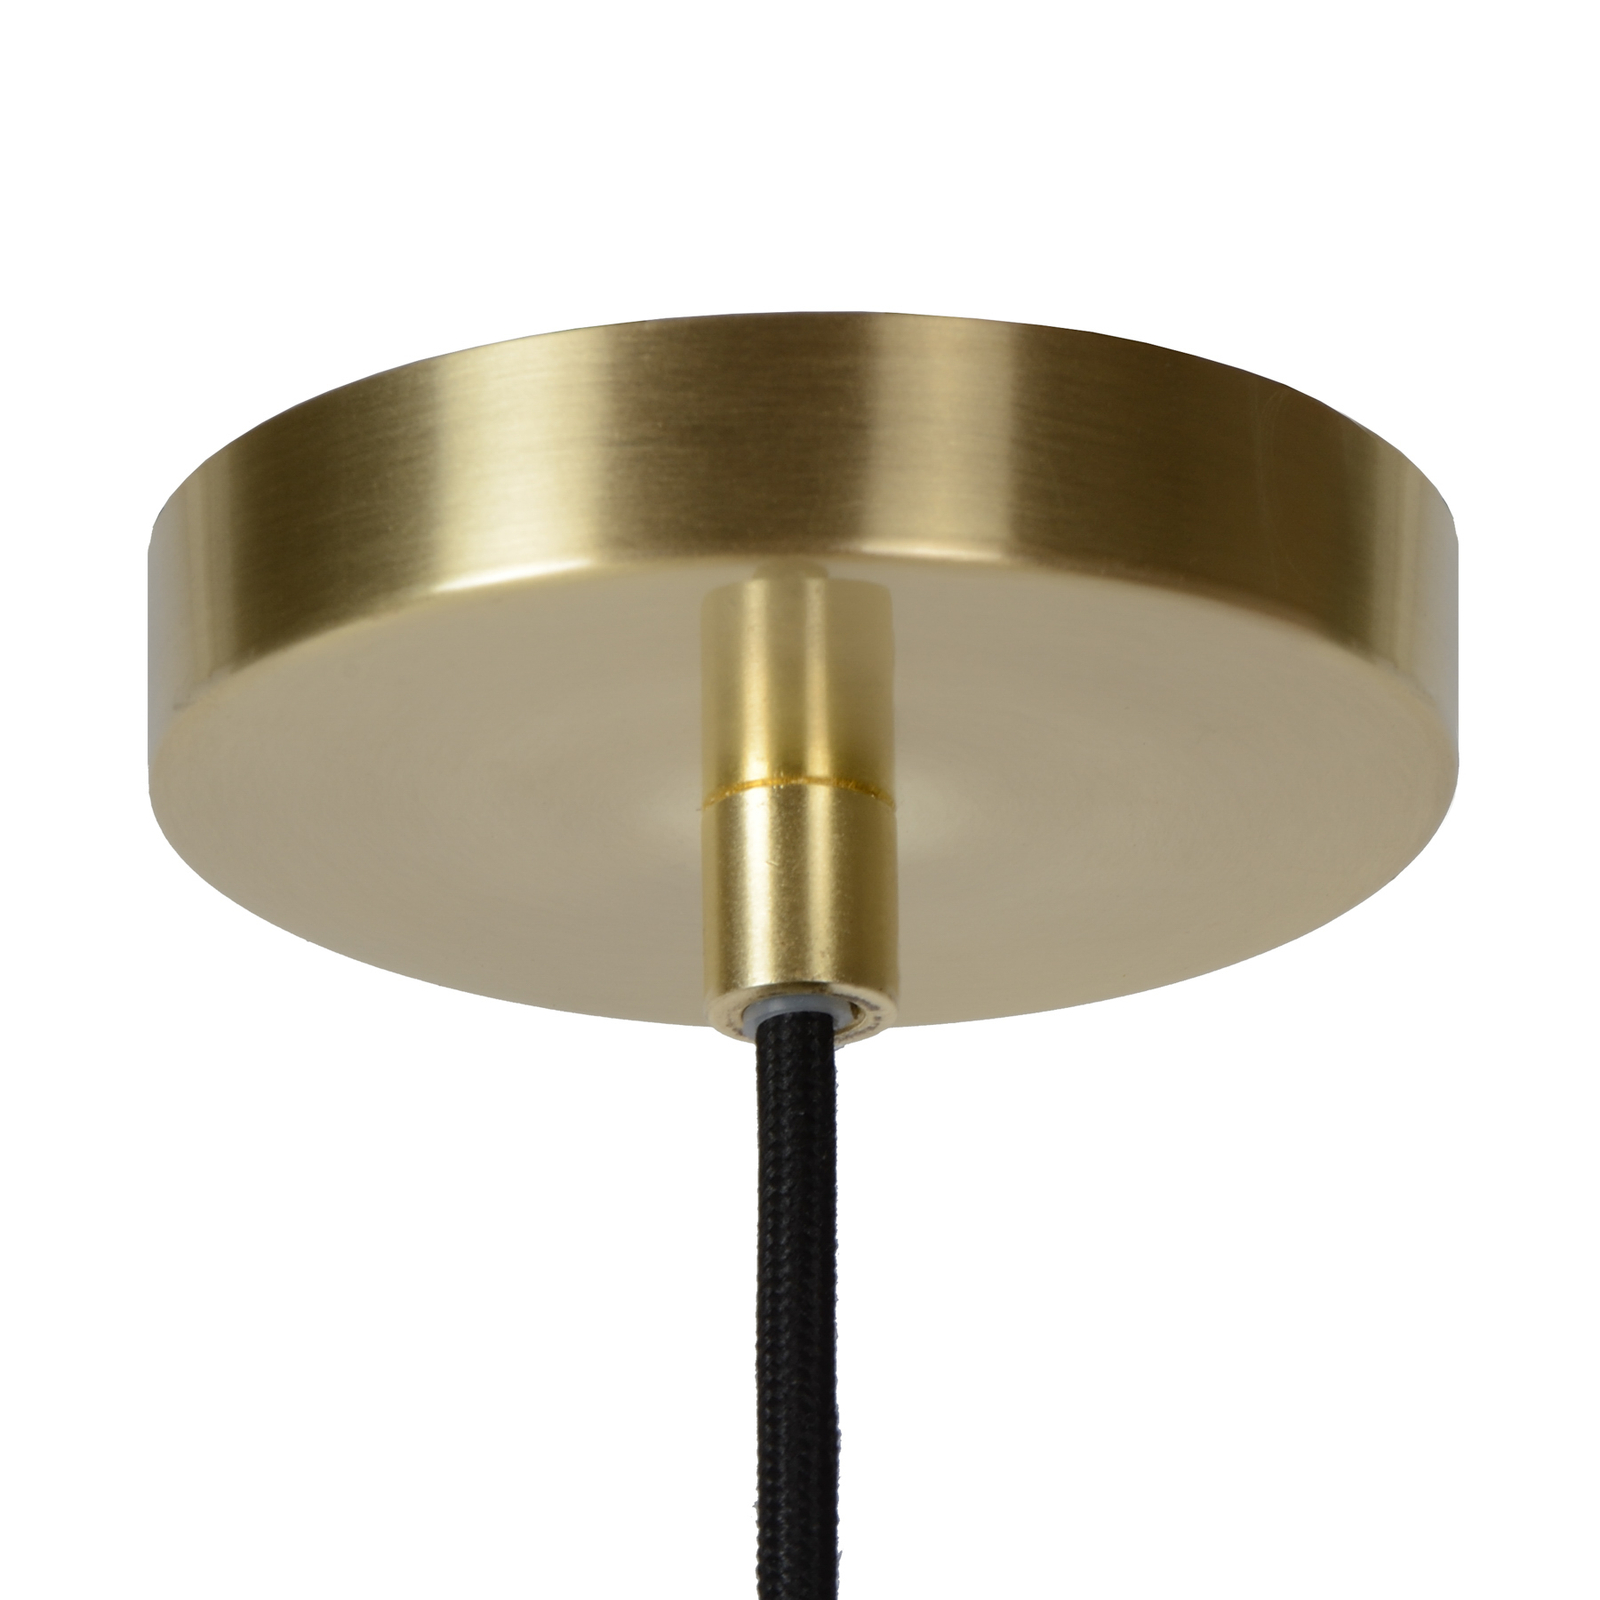 Hanglamp Tycho, 6-lamps, goud/rookgrijs